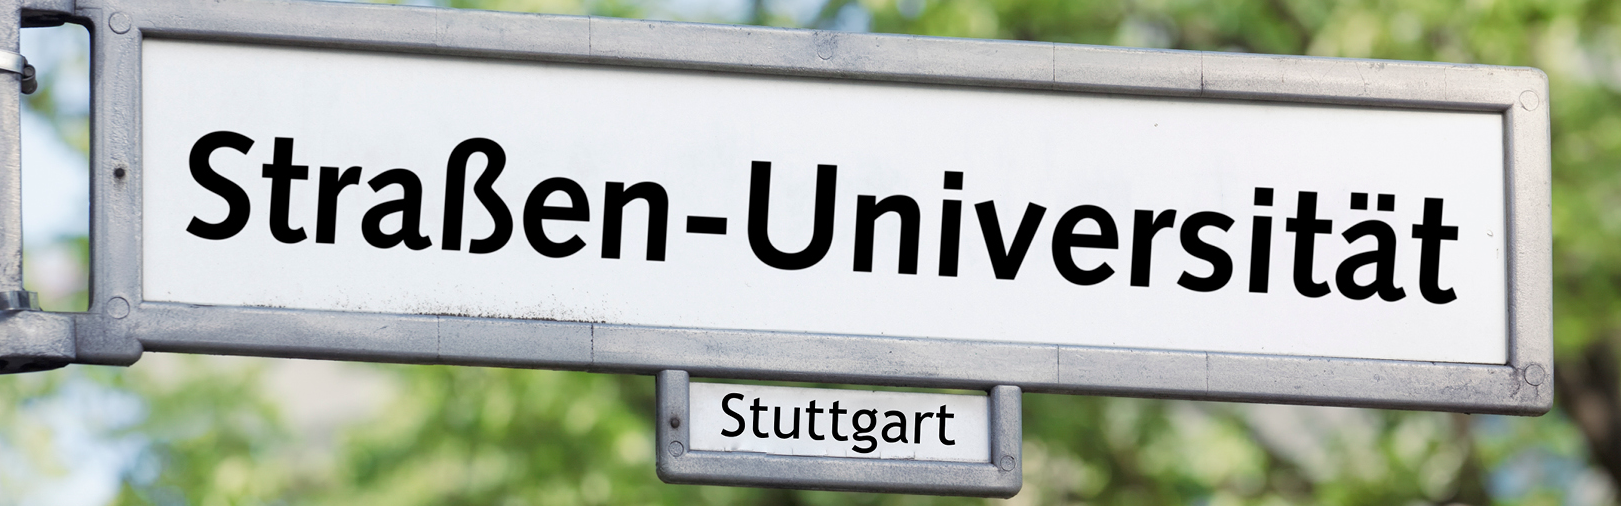 Auf dem Bild ist das Logo des Stuttgarter Straßenuniversität mit dem gleichnamigen Titel auf einem weißen Straßenschild abgebildet.